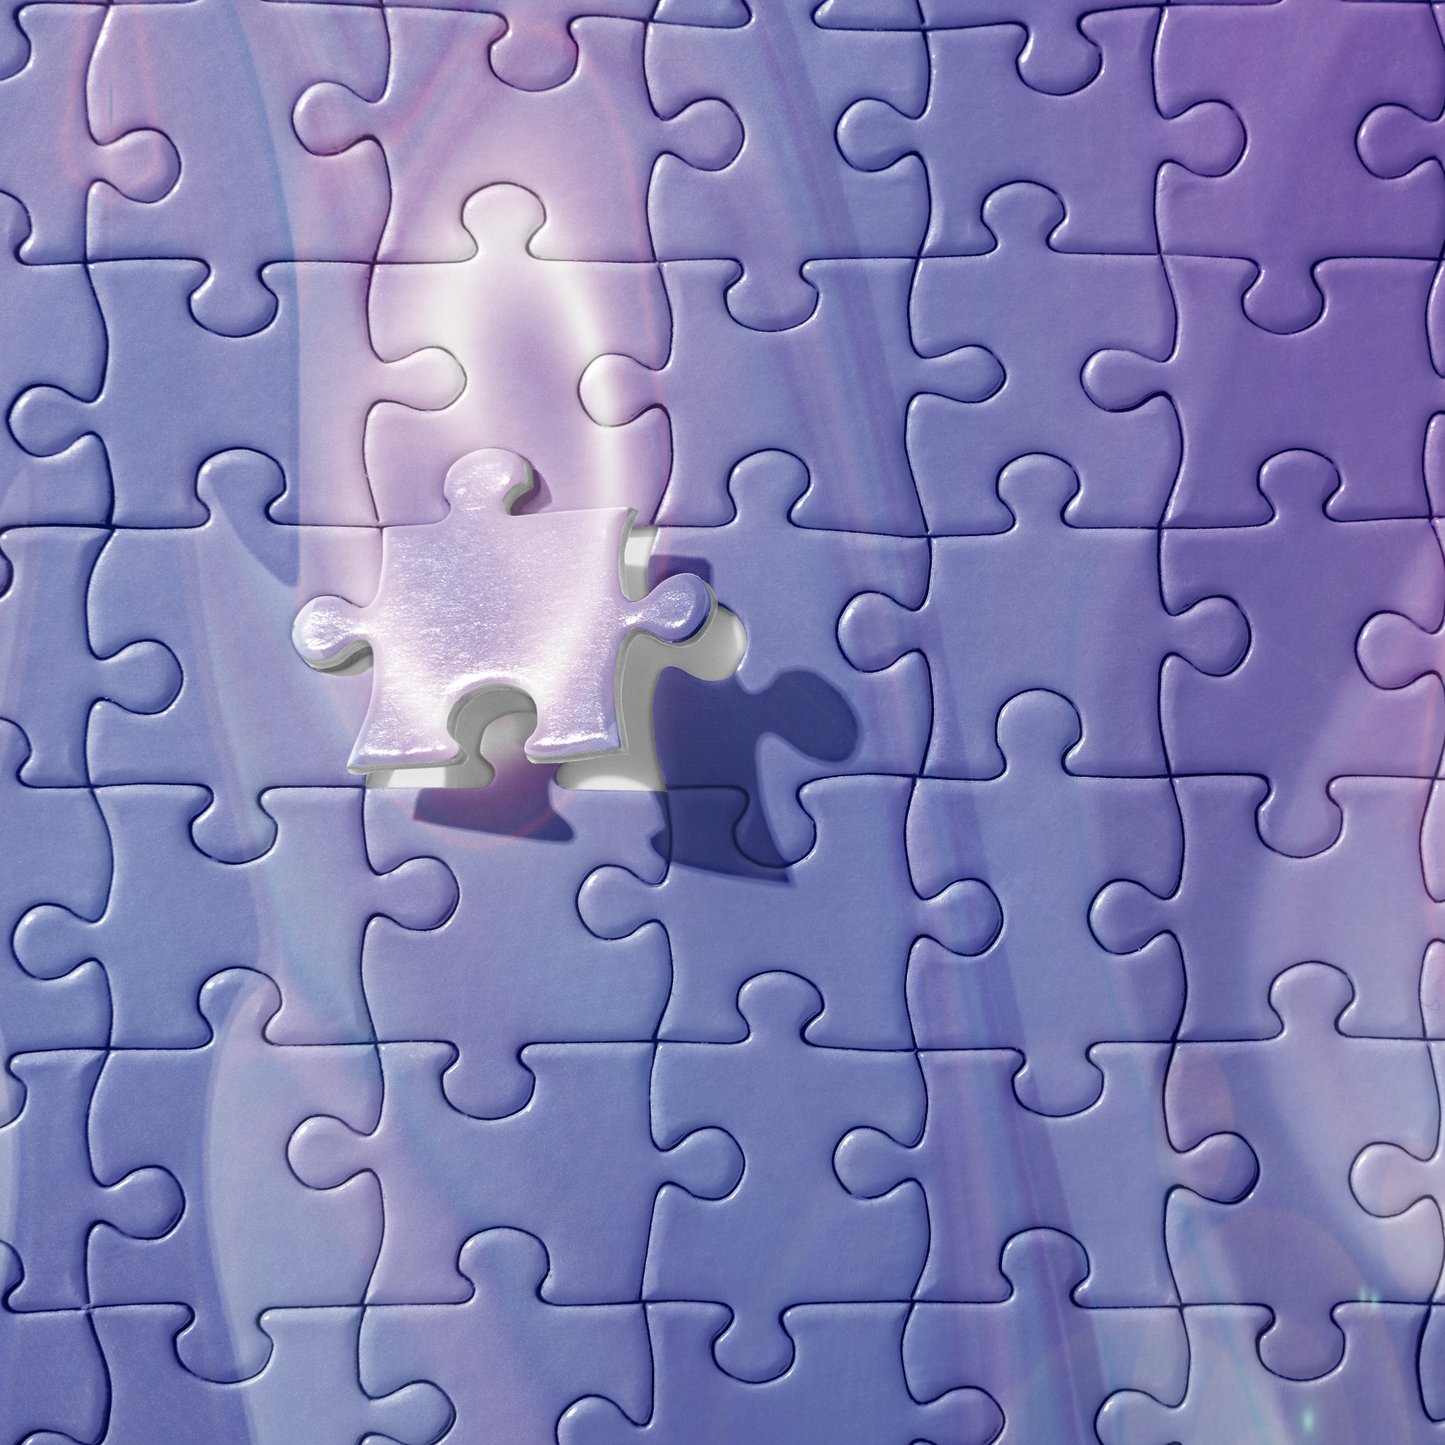 Hidden Reservoir Abstract Art BeSculpt Kids Jigsaw Puzzle 252/520 Pieces # 2 Image